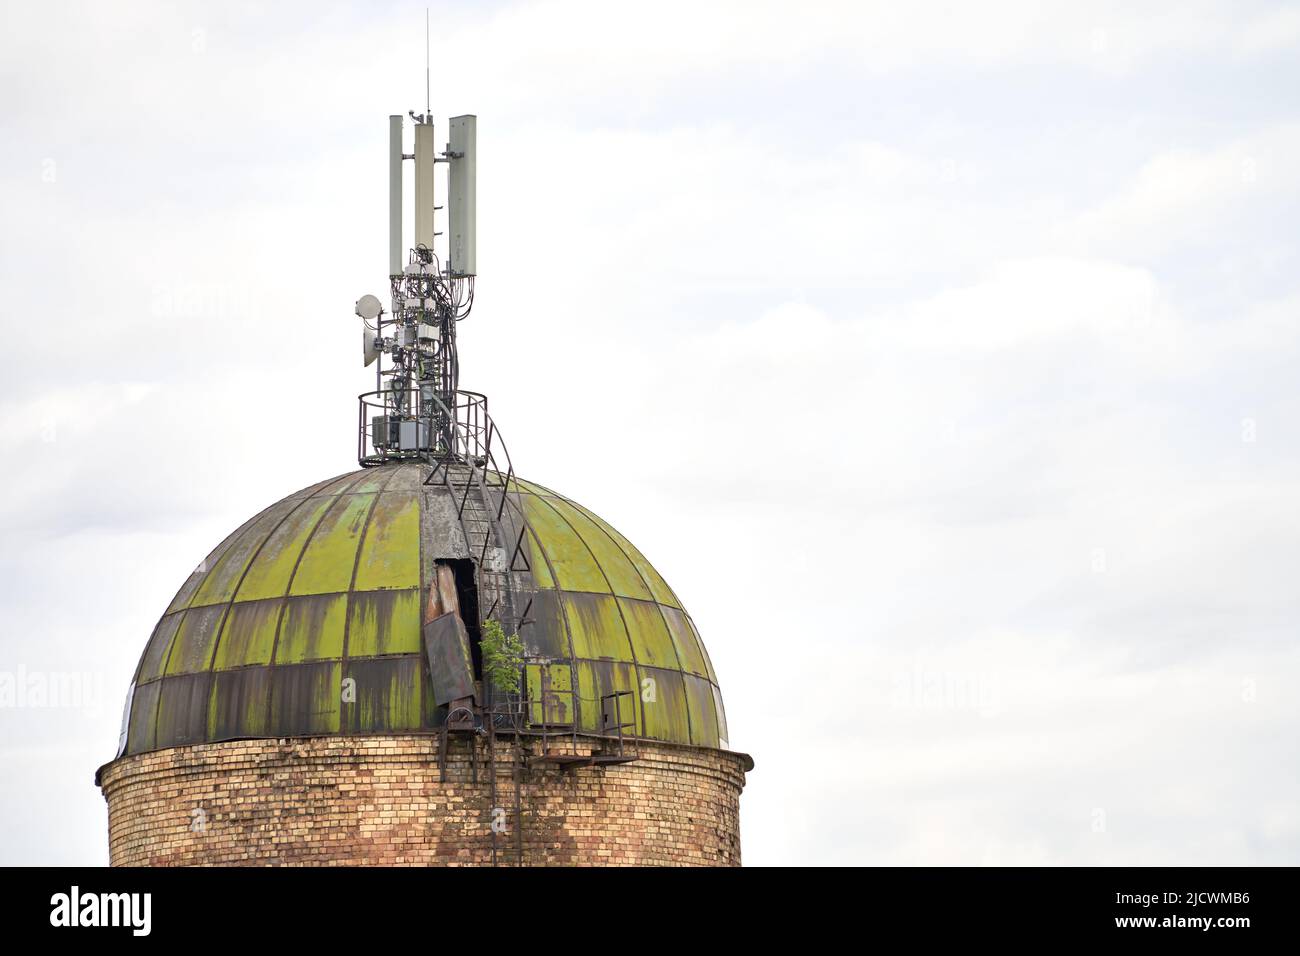 Ein alter Ziegelturm mit verwittertem Metalldach und Funkantenne Sender gegen bewölkten Himmel und. Internet-, 3G-, 4G- und 5G-Mobilfunkverbindung. Stockfoto